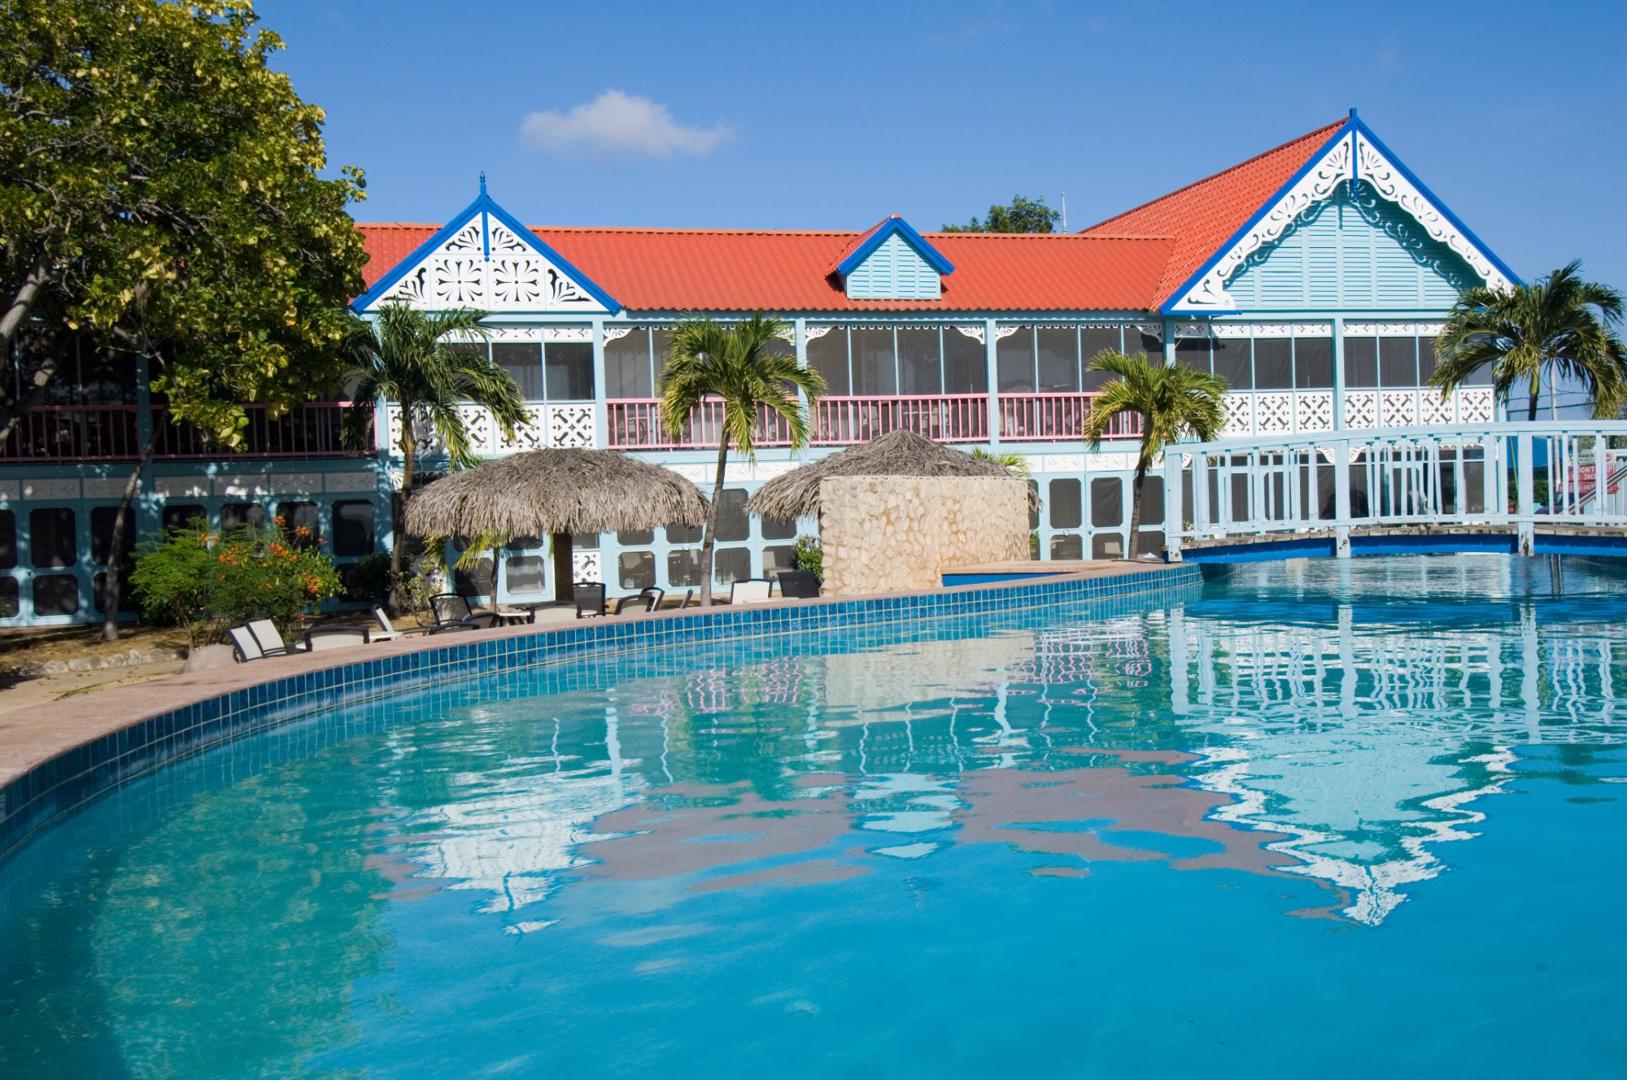 Divi Flamingo Beach Resort en Casino - Kralendijk - Bonaire